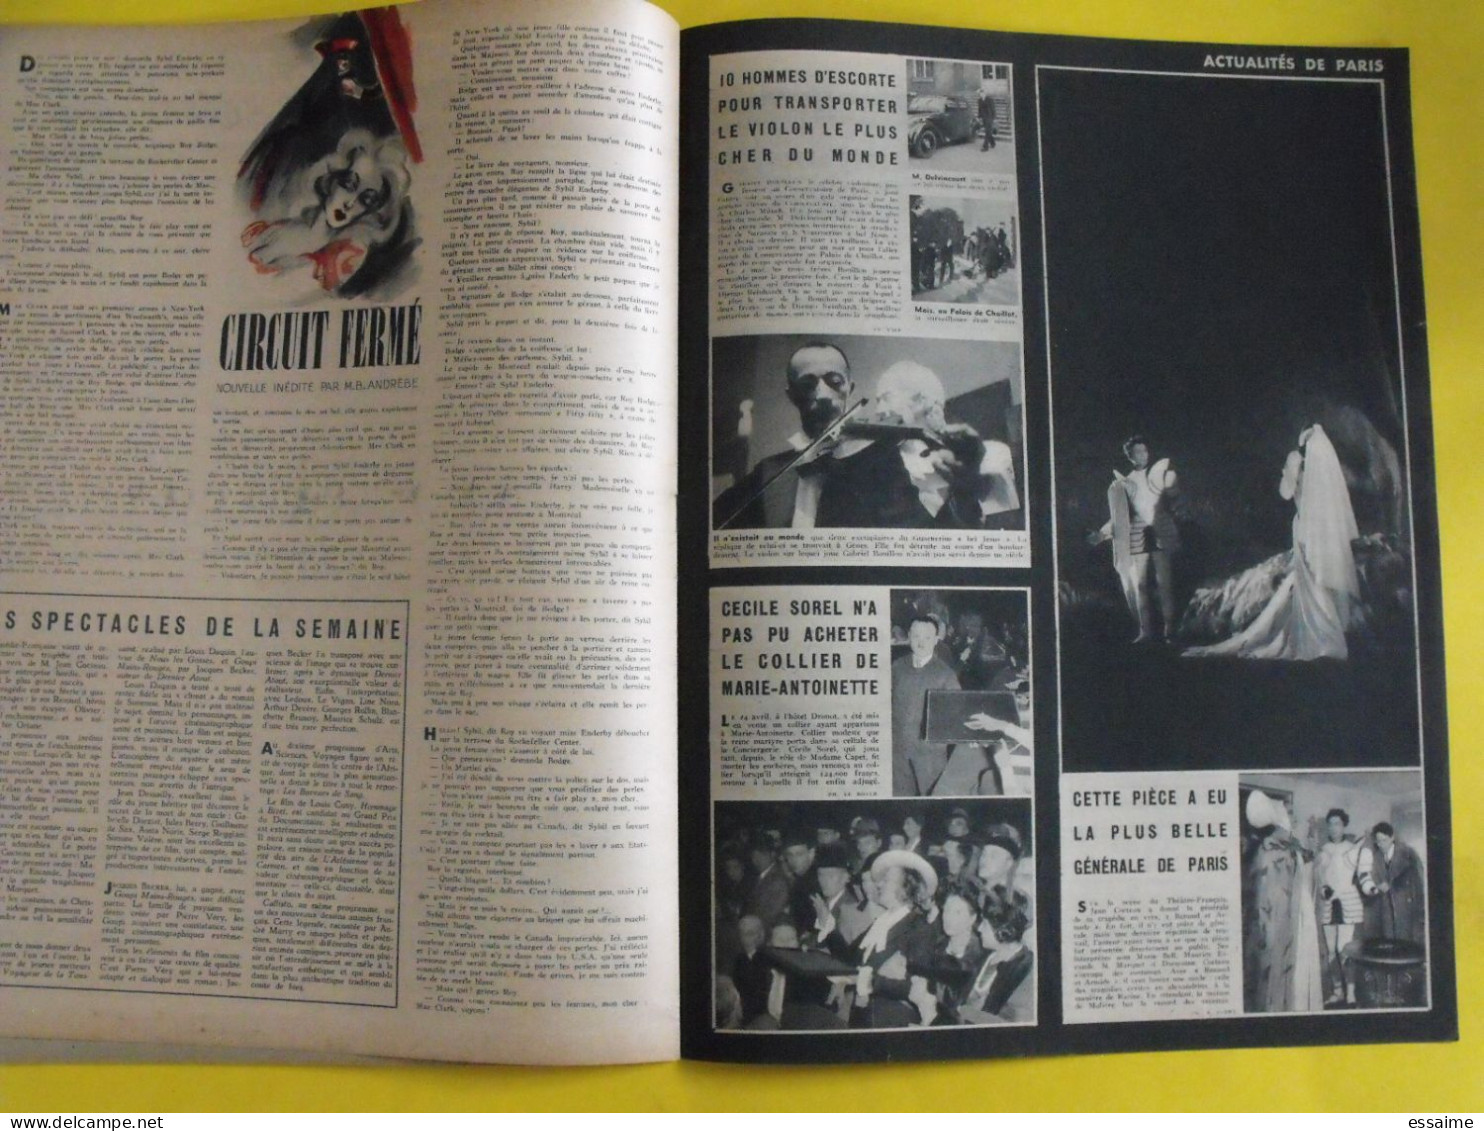 6 revues La semaine de 1943. actualités guerre photos collaboration moscou  martinique laval fuhrer katyn  raimu baquet